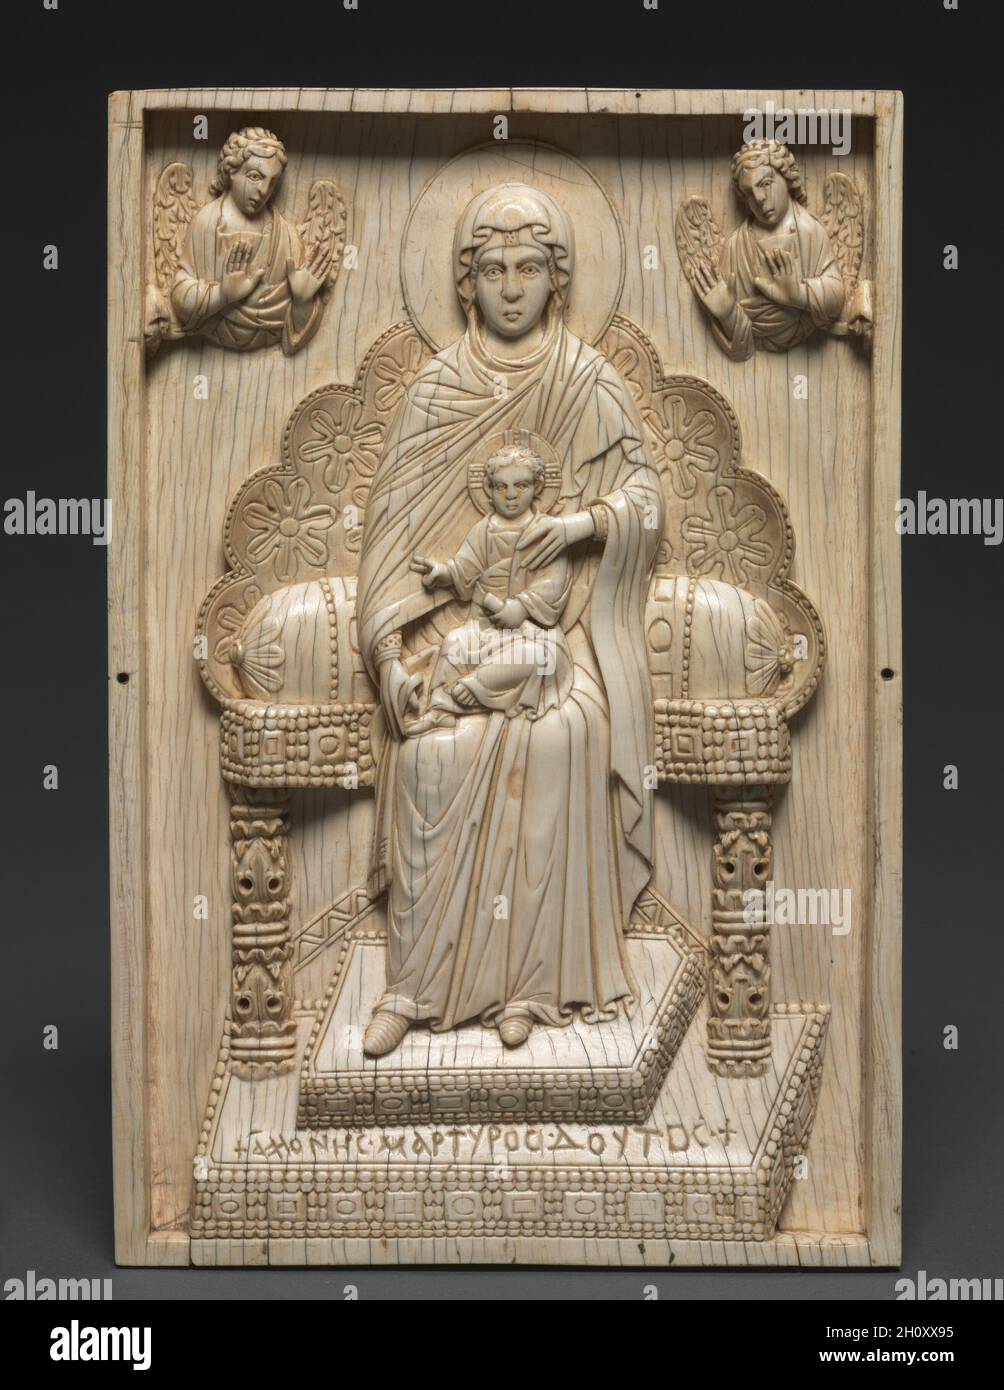 Elfenbeintafel mit der inthronisierten Gottesmutter ('The Stroganoff Ivory'), 950–1025. Byzanz, Konstantinopel, byzantinische Zeit. Elfenbein; insgesamt: 25.3 x 17.2 x 1.8 cm (9 15/16 x 6 3/4 x 11/16 Zoll). Die Mutter Gottes sitzt auf einem reich geschnitzten, hoch gedeckten Thron. Zwei Engel schweben darüber und machen auf das Christuskind aufmerksam, das in ihrem Schoß steht. Darstellungen der thronenden Jungfrau und des Kindes haben eine lange Tradition in der byzantinischen Kunst und reichen bis ins 6. Jahrhundert zurück. Mit einer Hand, die zum Segen erhoben wird, die andere mit einer Schriftrolle, wird Christus hier als ein emotionsloses und übernatürliches ch dargestellt Stockfoto